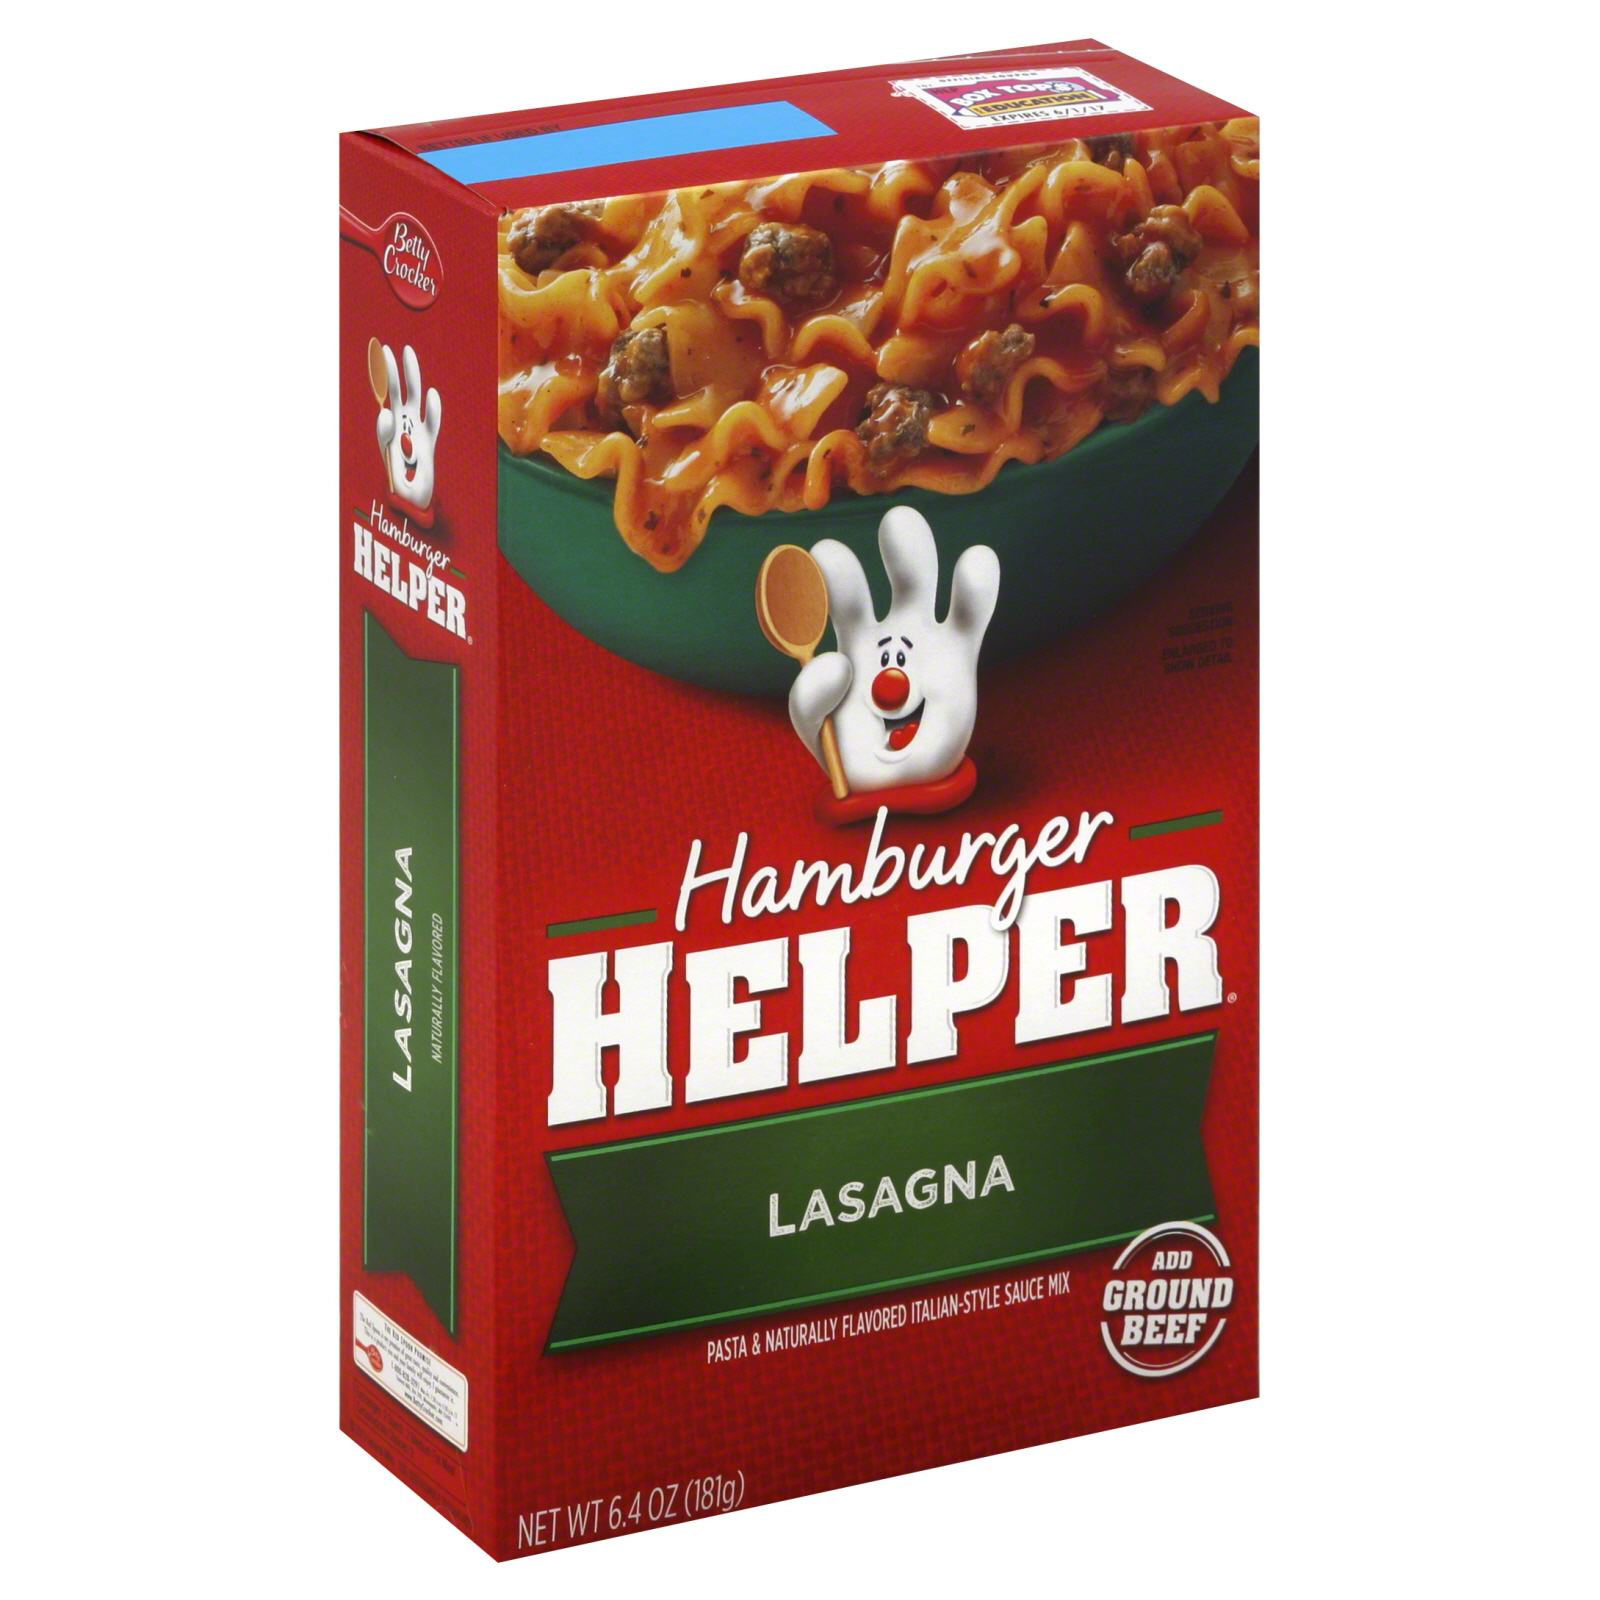 Hamburger Helper Italian Pasta & Sauce Mix, Lasagna, 6.4 oz (181 g)